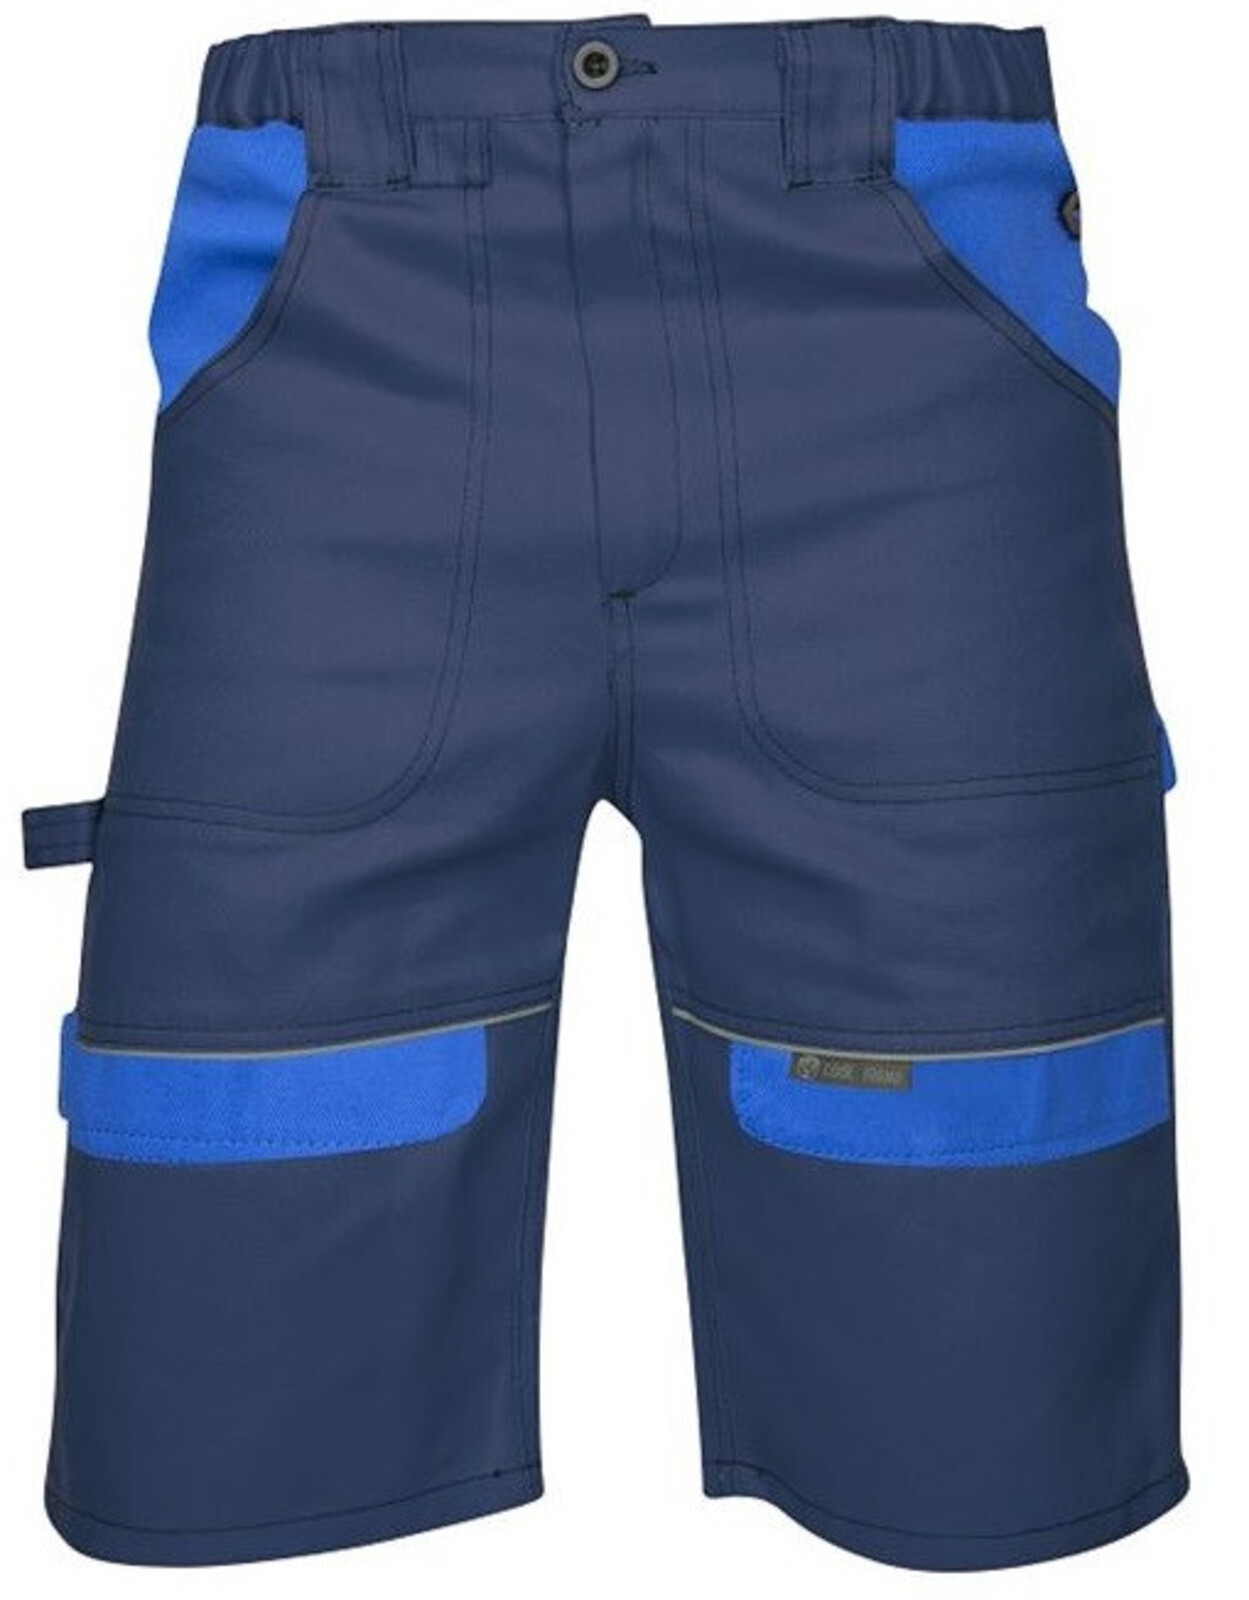 Pánske montérkové šortky Ardon Cool Trend - veľkosť: 64, farba: tmavomodrá/svetlomodrá